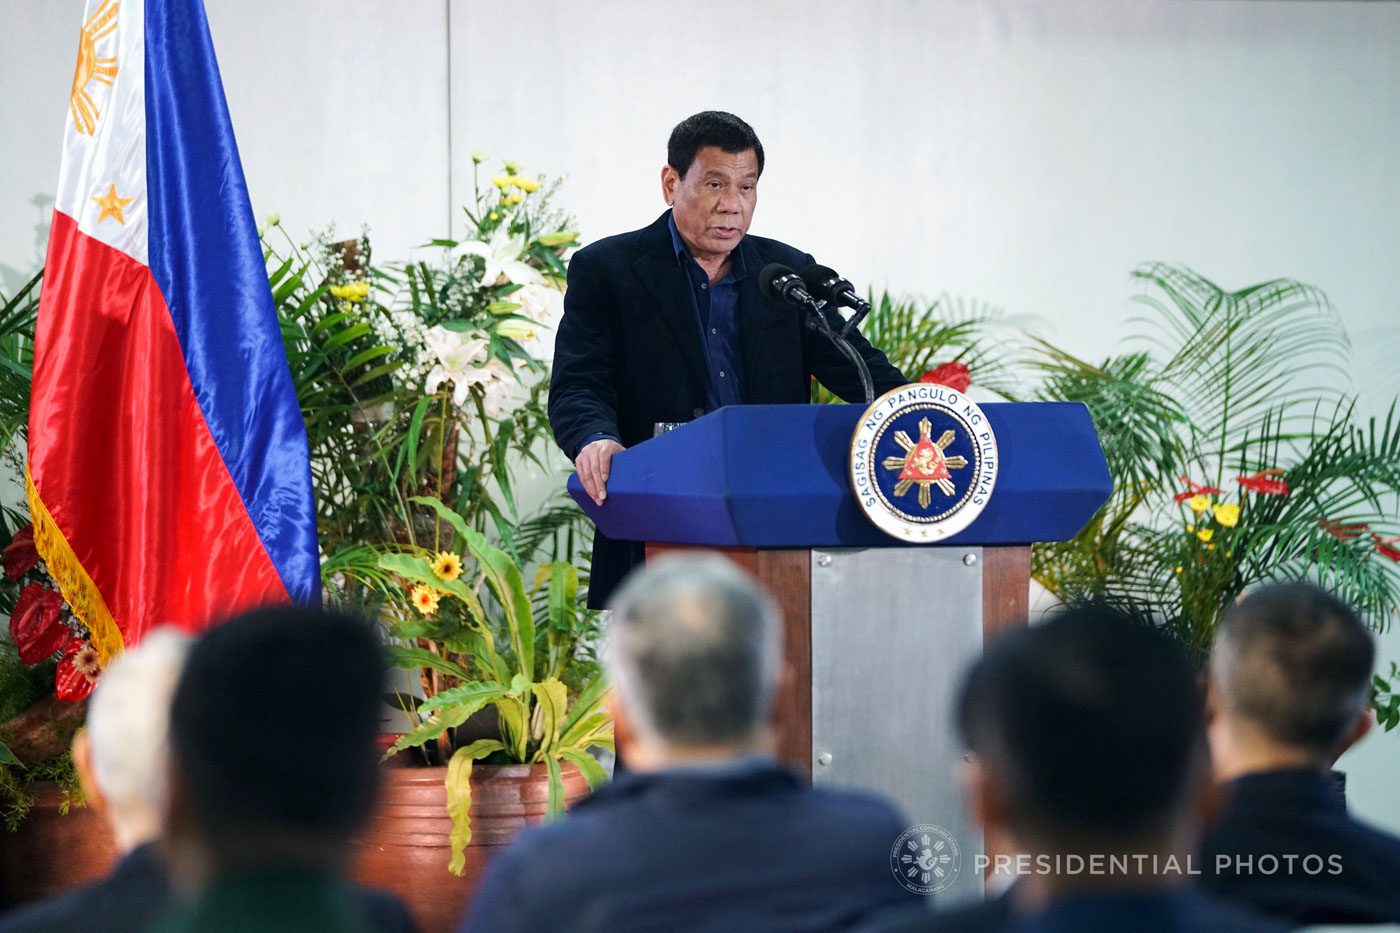 Duterte, PDEA to discuss anti-illegal drug measures